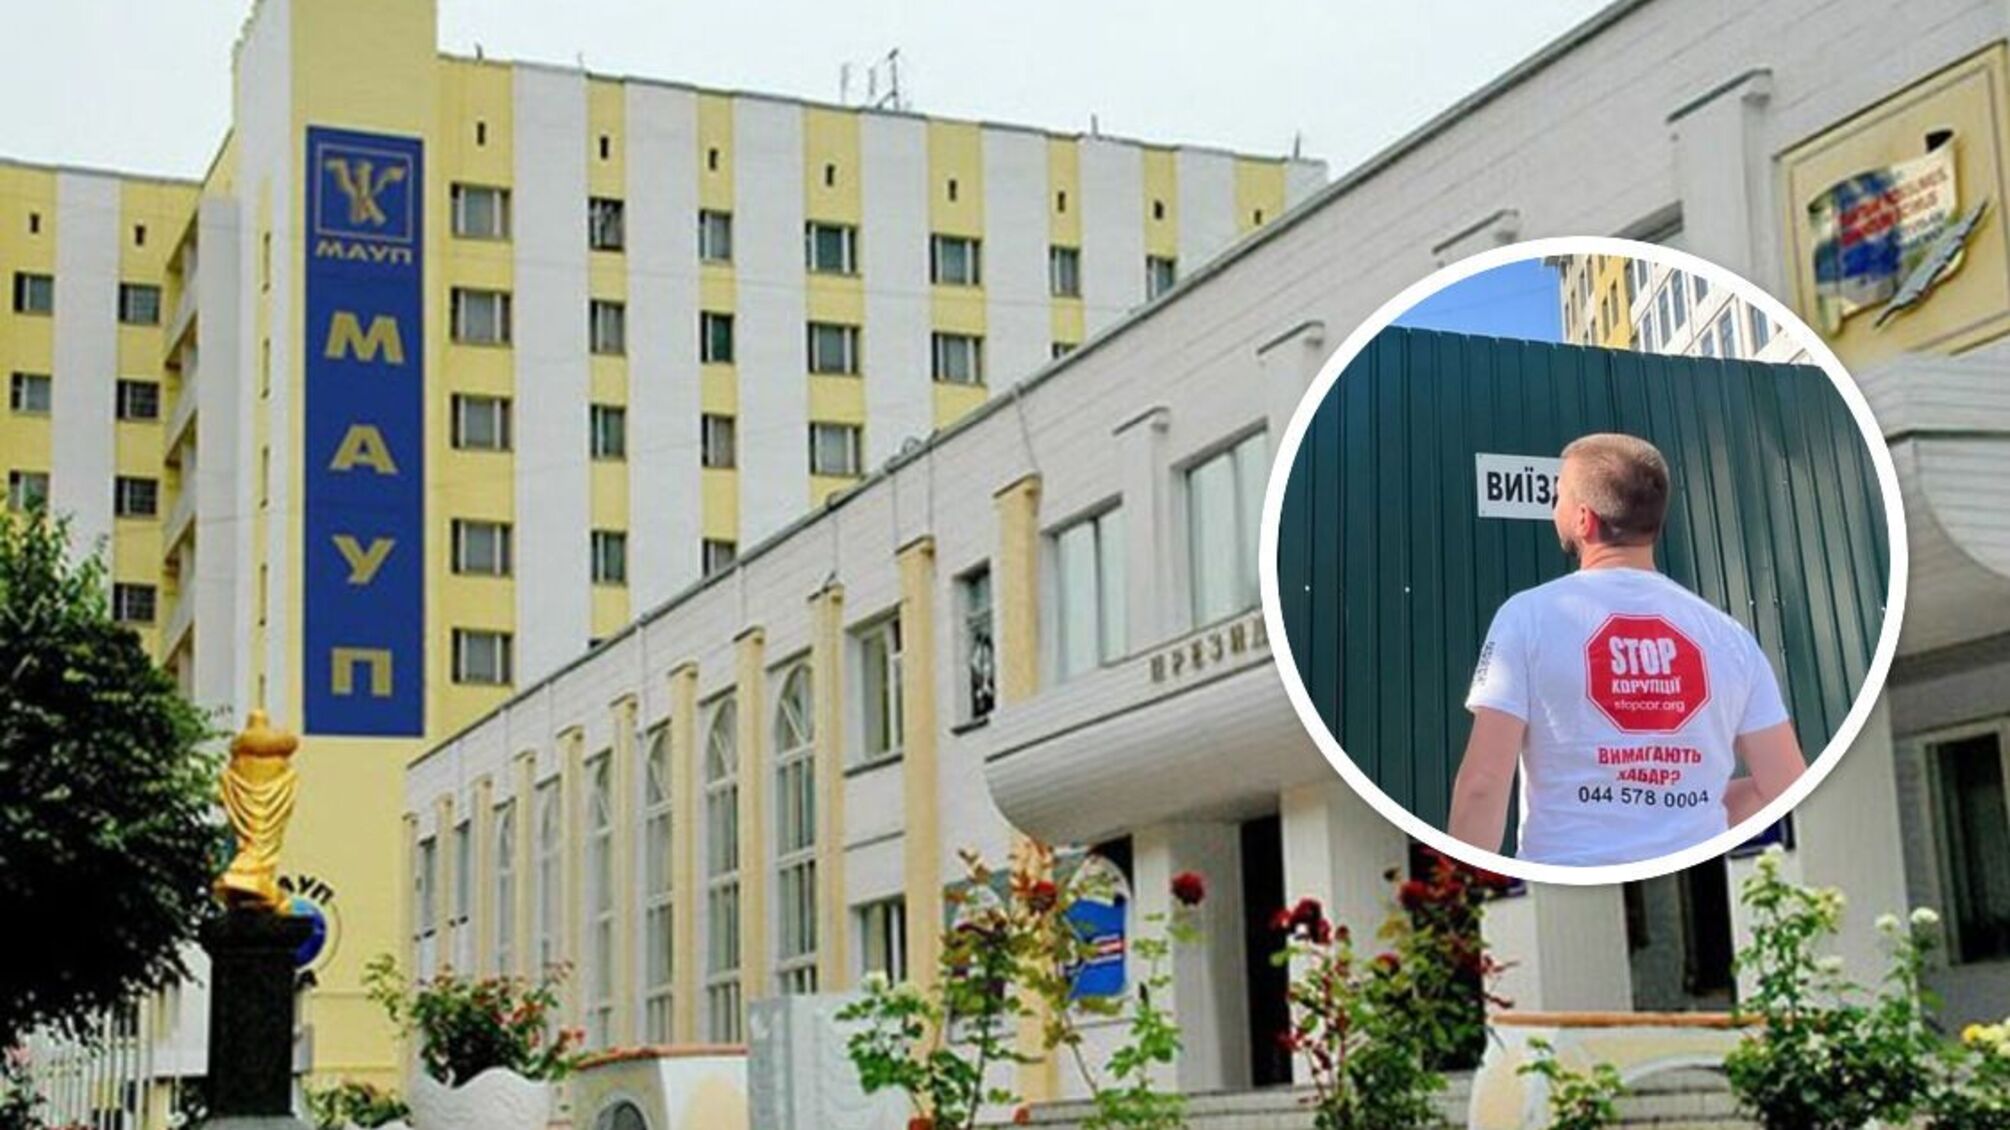 'Жилье для студентов': столичный МАУП строит новое общежитие - что известно